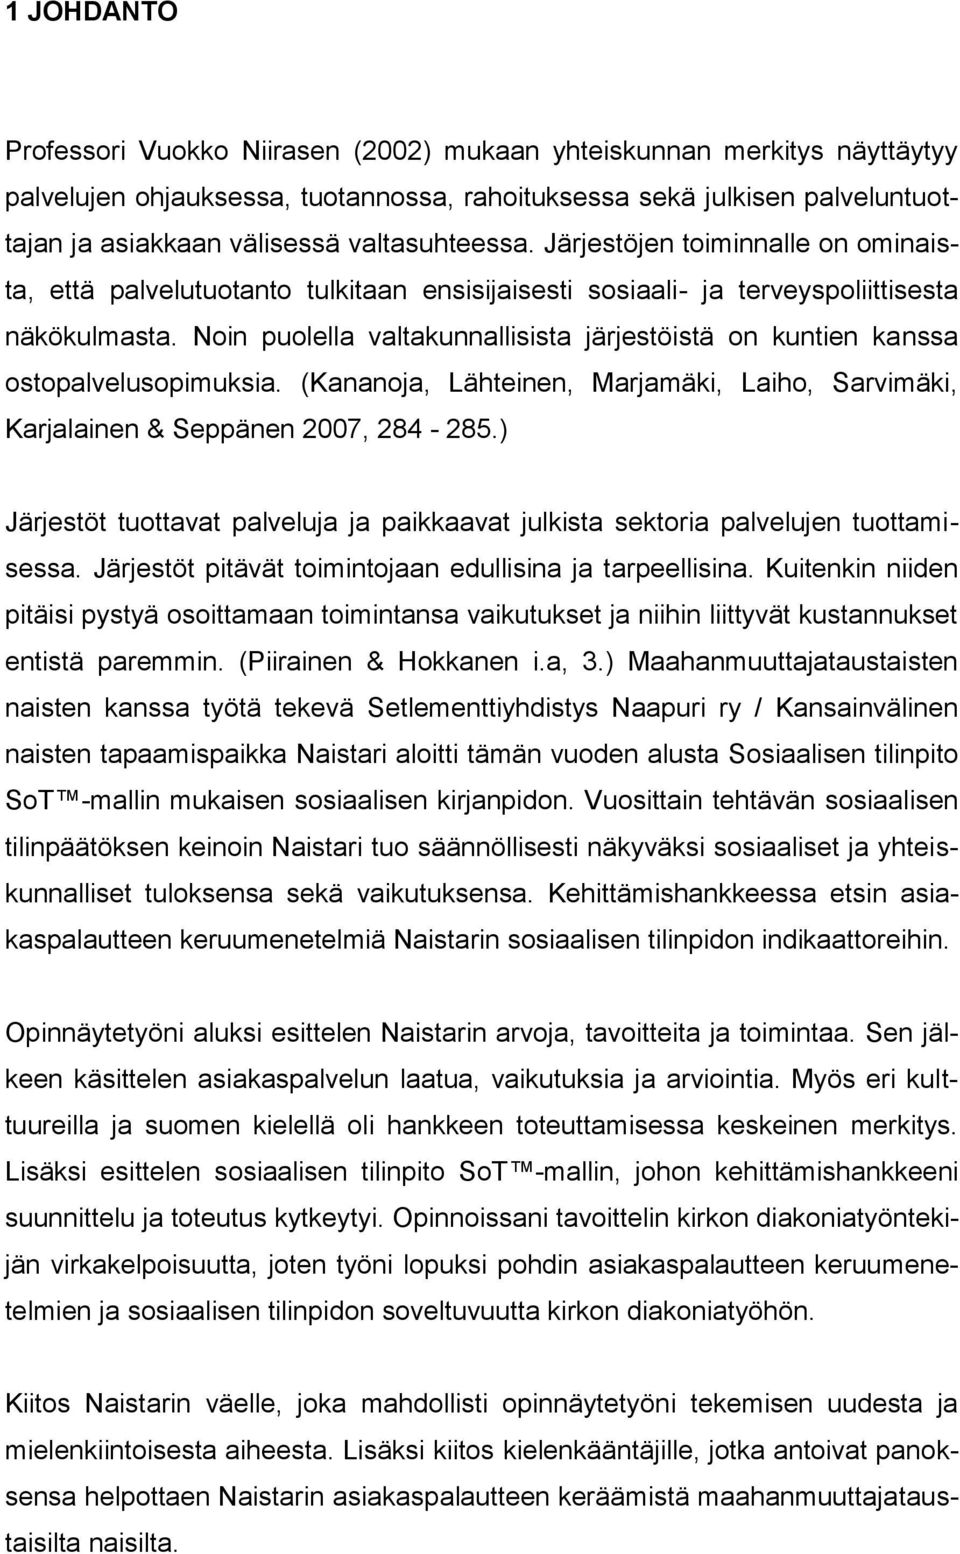 Noin puolella valtakunnallisista järjestöistä on kuntien kanssa ostopalvelusopimuksia. (Kananoja, Lähteinen, Marjamäki, Laiho, Sarvimäki, Karjalainen & Seppänen 2007, 284-285.